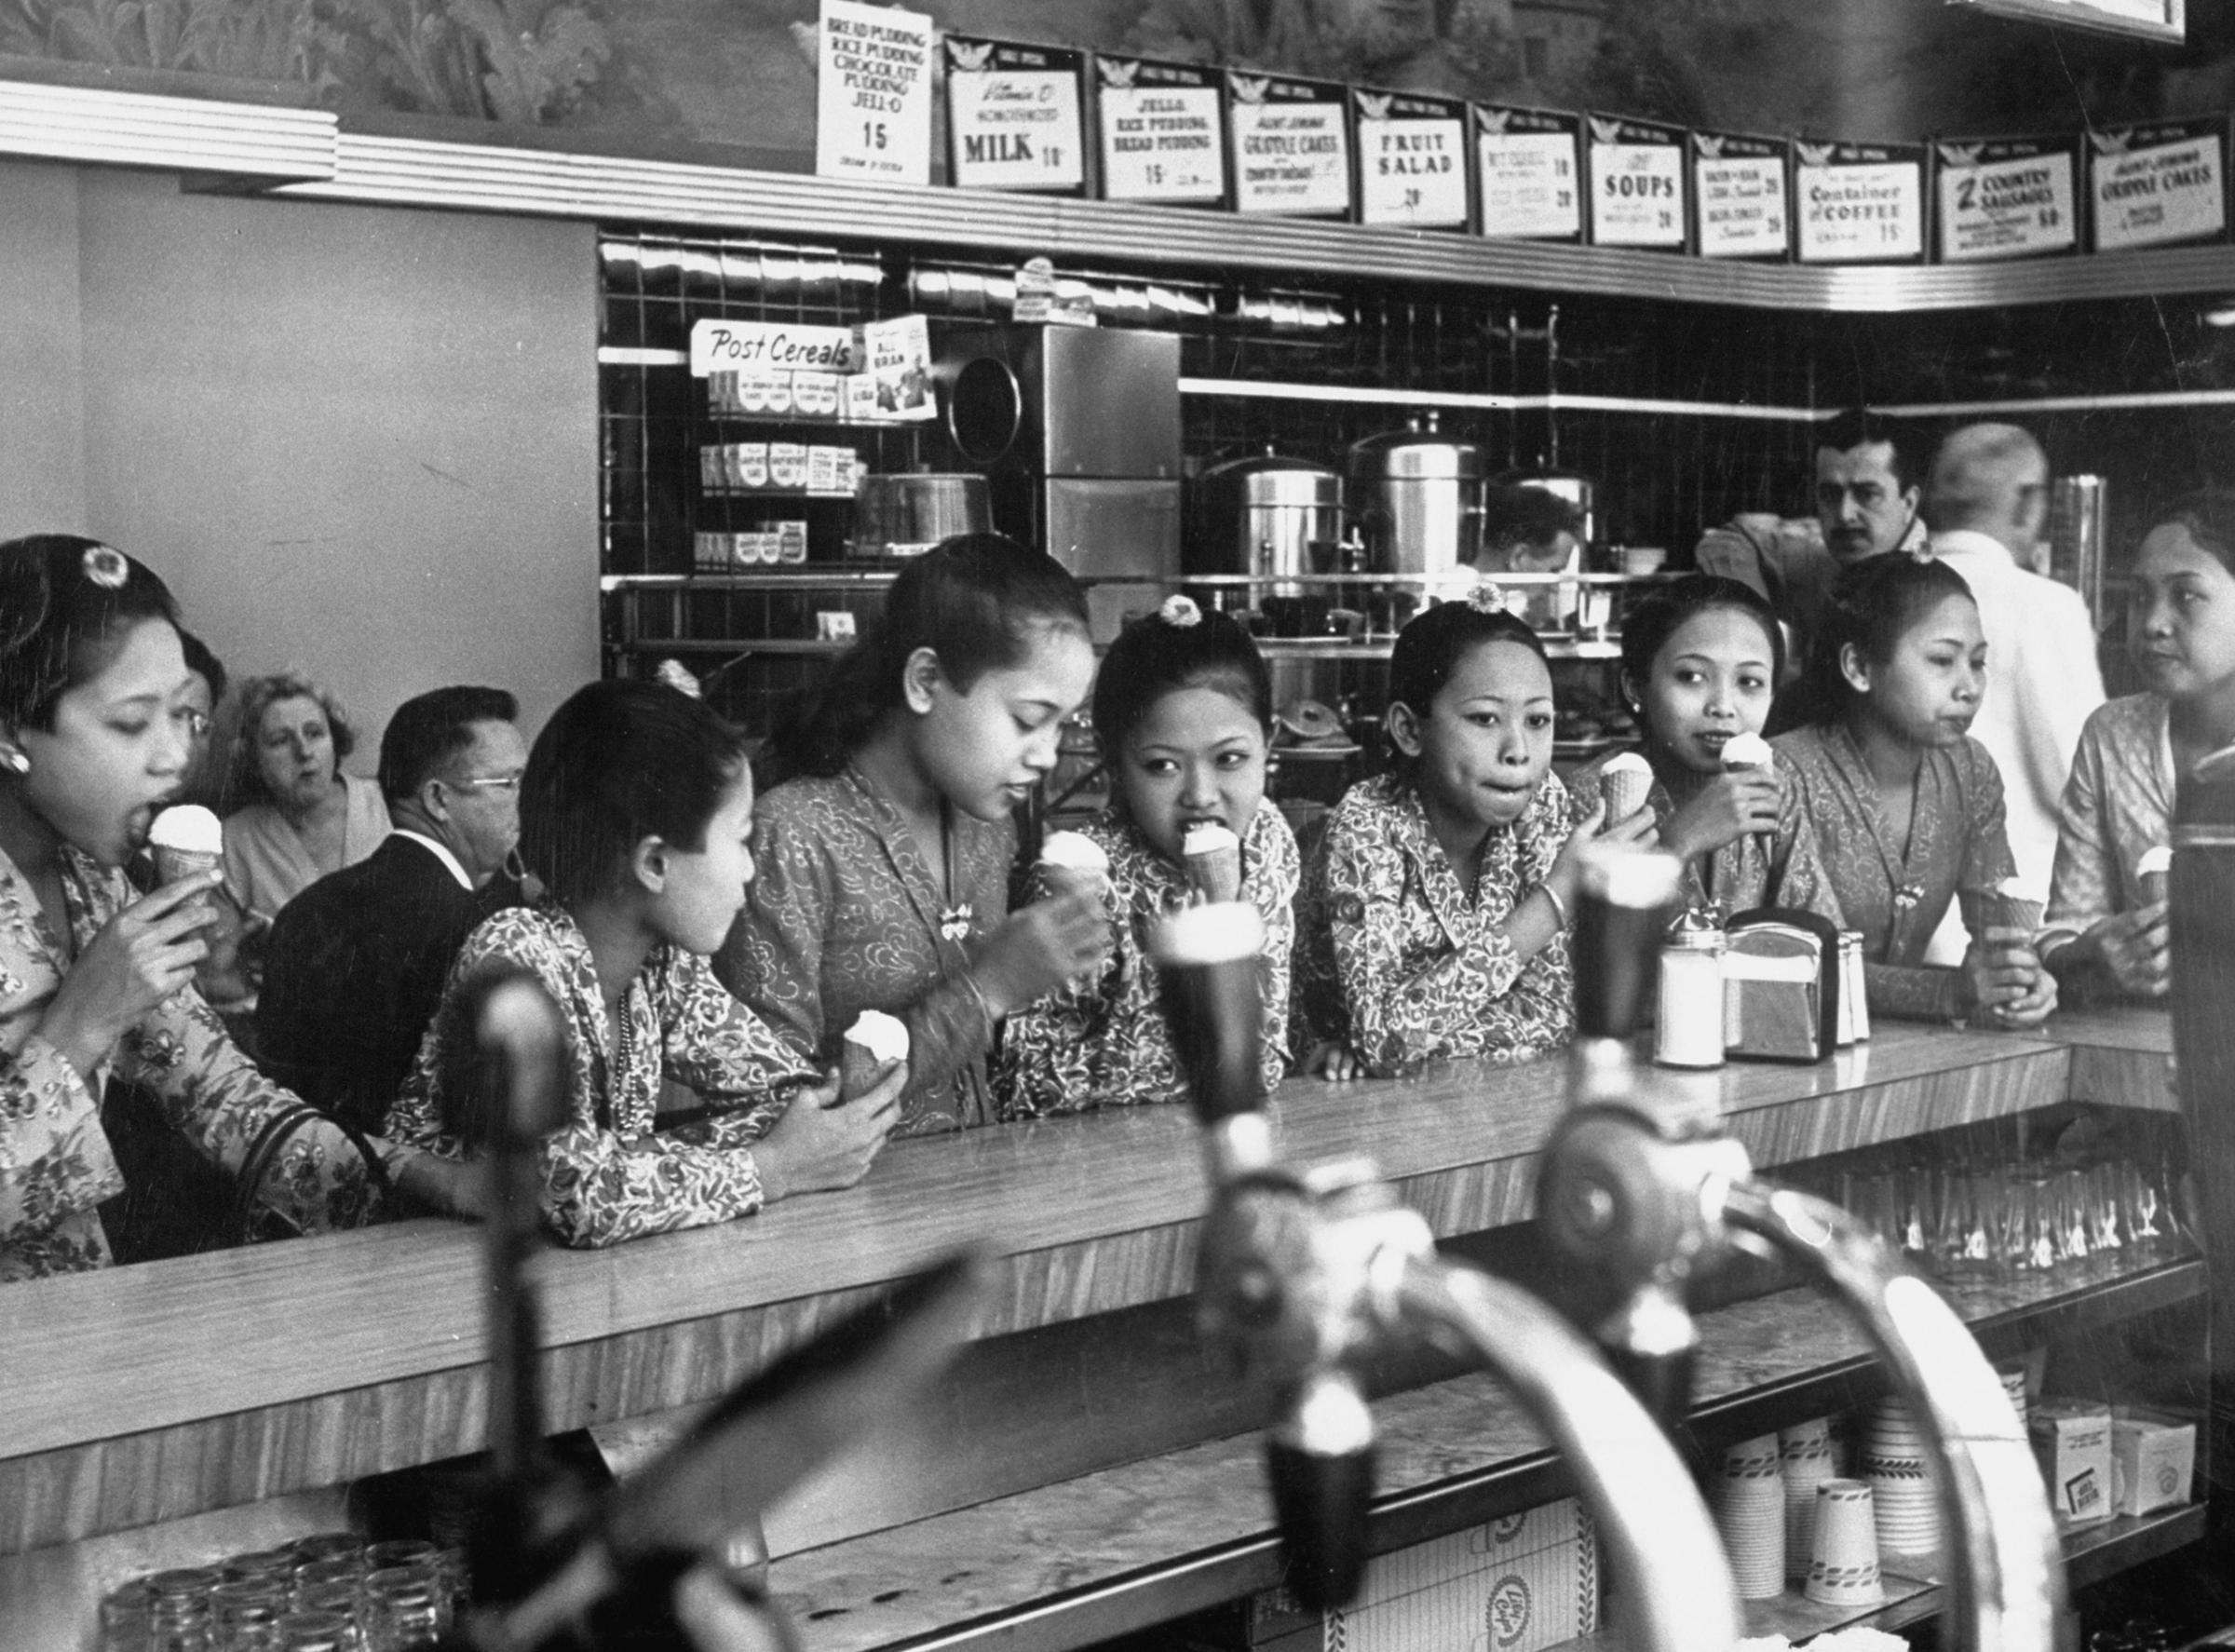 Balinese dancing girls eating ice cream, 1952.